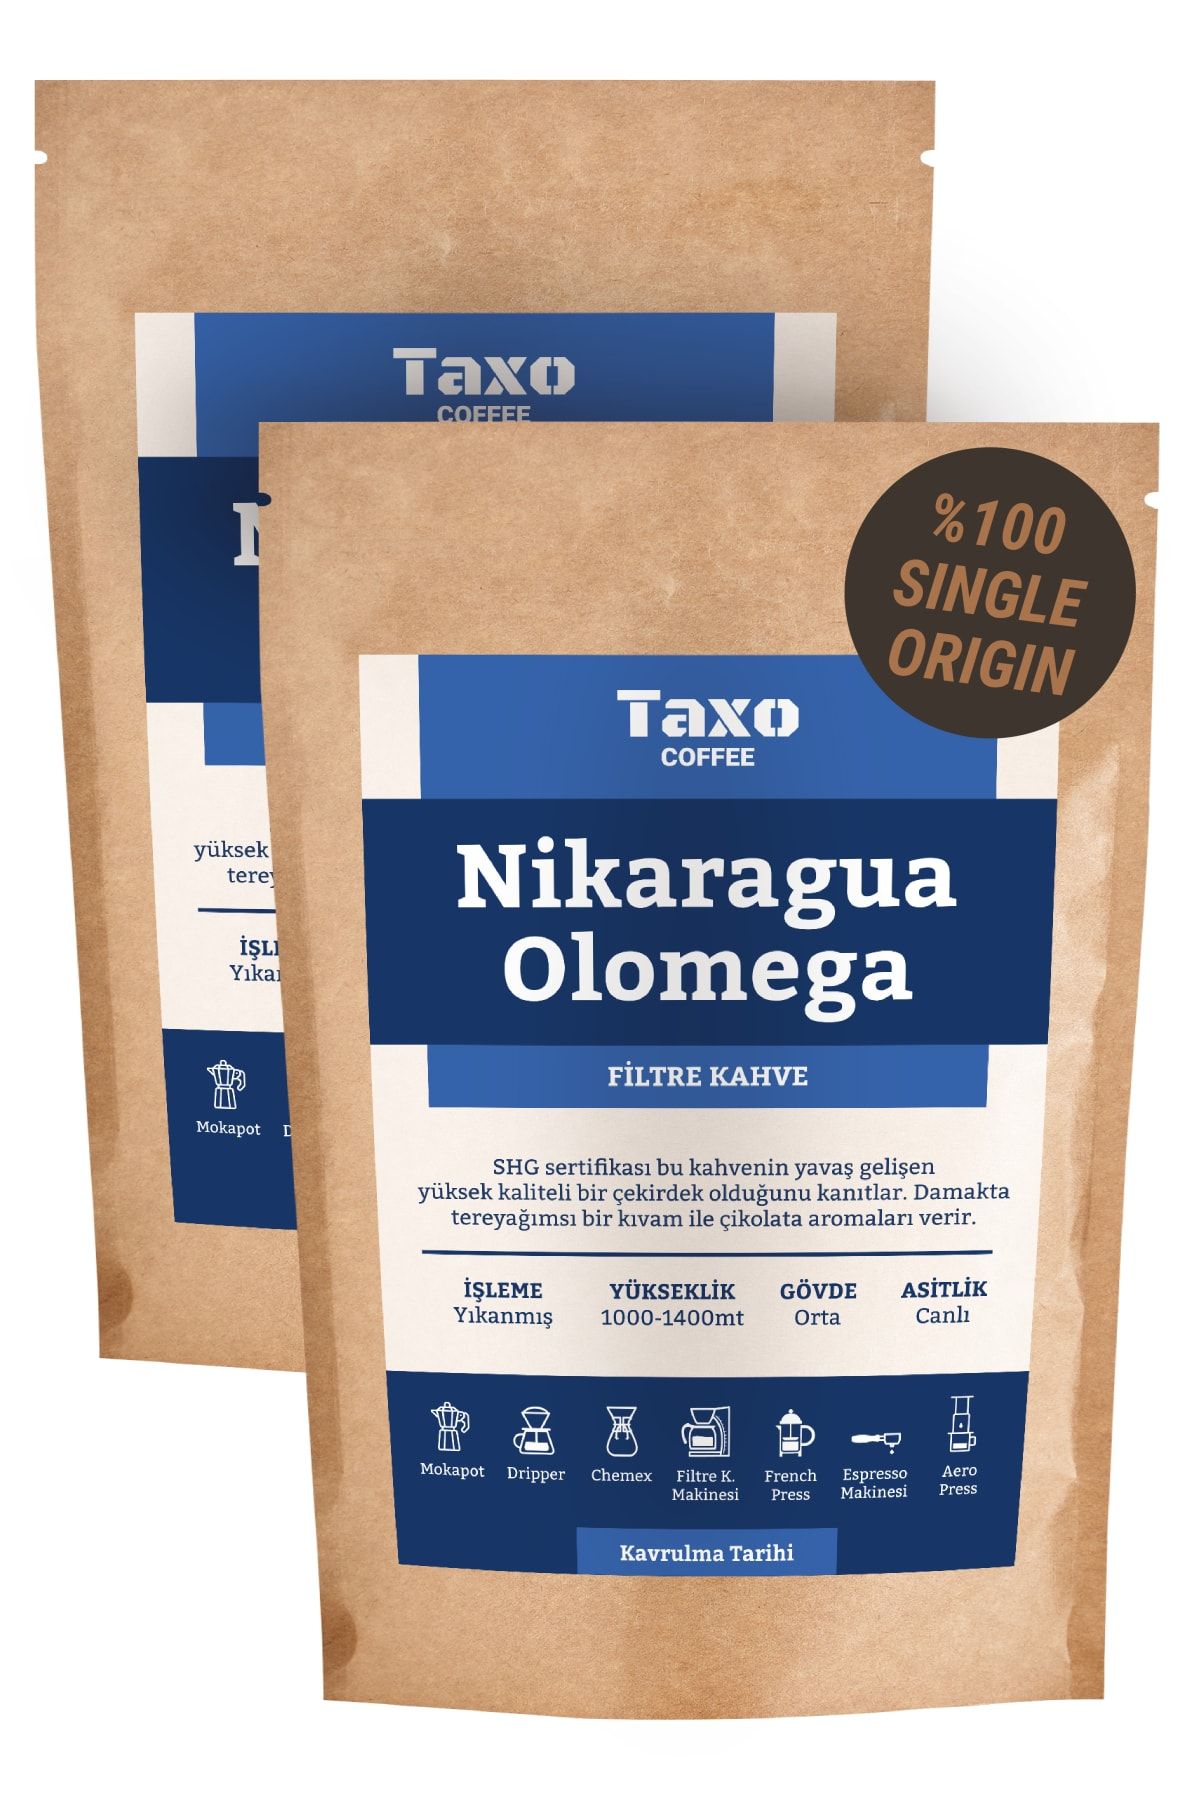 Taxo Coffee Nikaragua Olomega Filtre Kahve 1kg